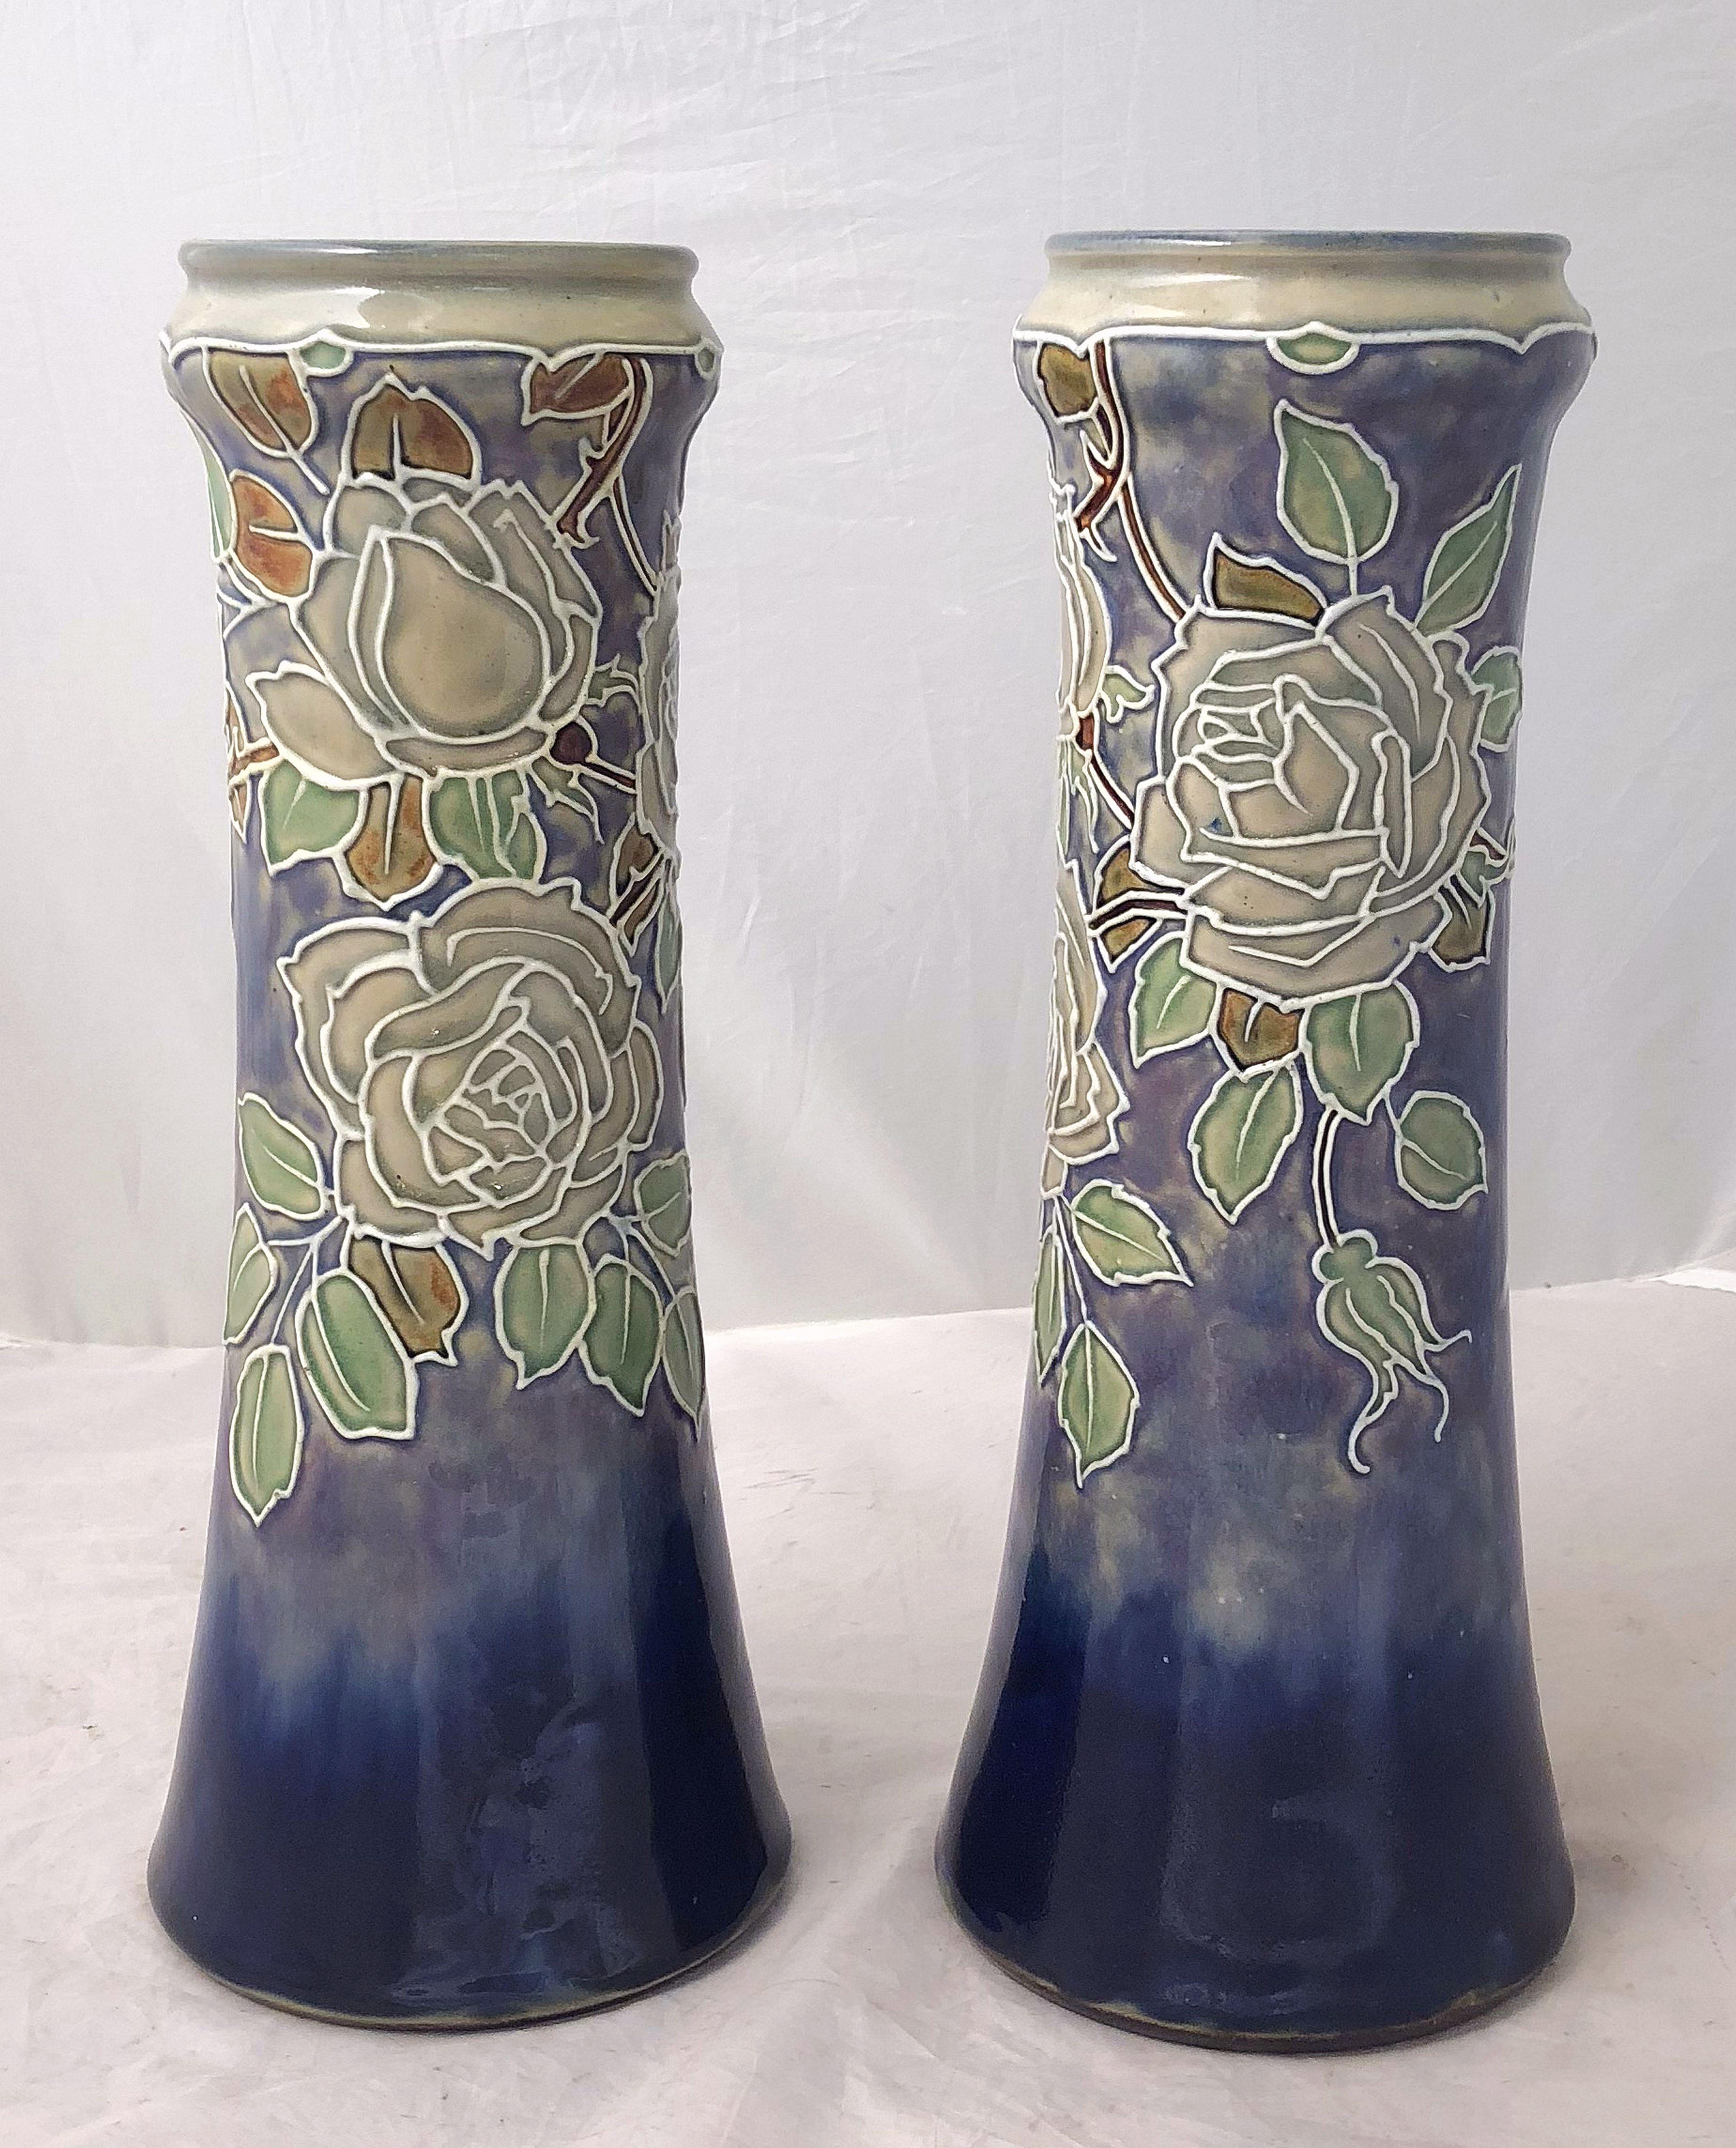 Ein feines Paar englischer dekorativer Keramikvasen aus der Arts & Crafts-Periode von der berühmten Töpferfirma Royal Doulton - jede Vase ist mit einem hübschen Blattmuster um den Umfang herum versehen. 

Mit eingeprägter Marke am Sockel.

Preis